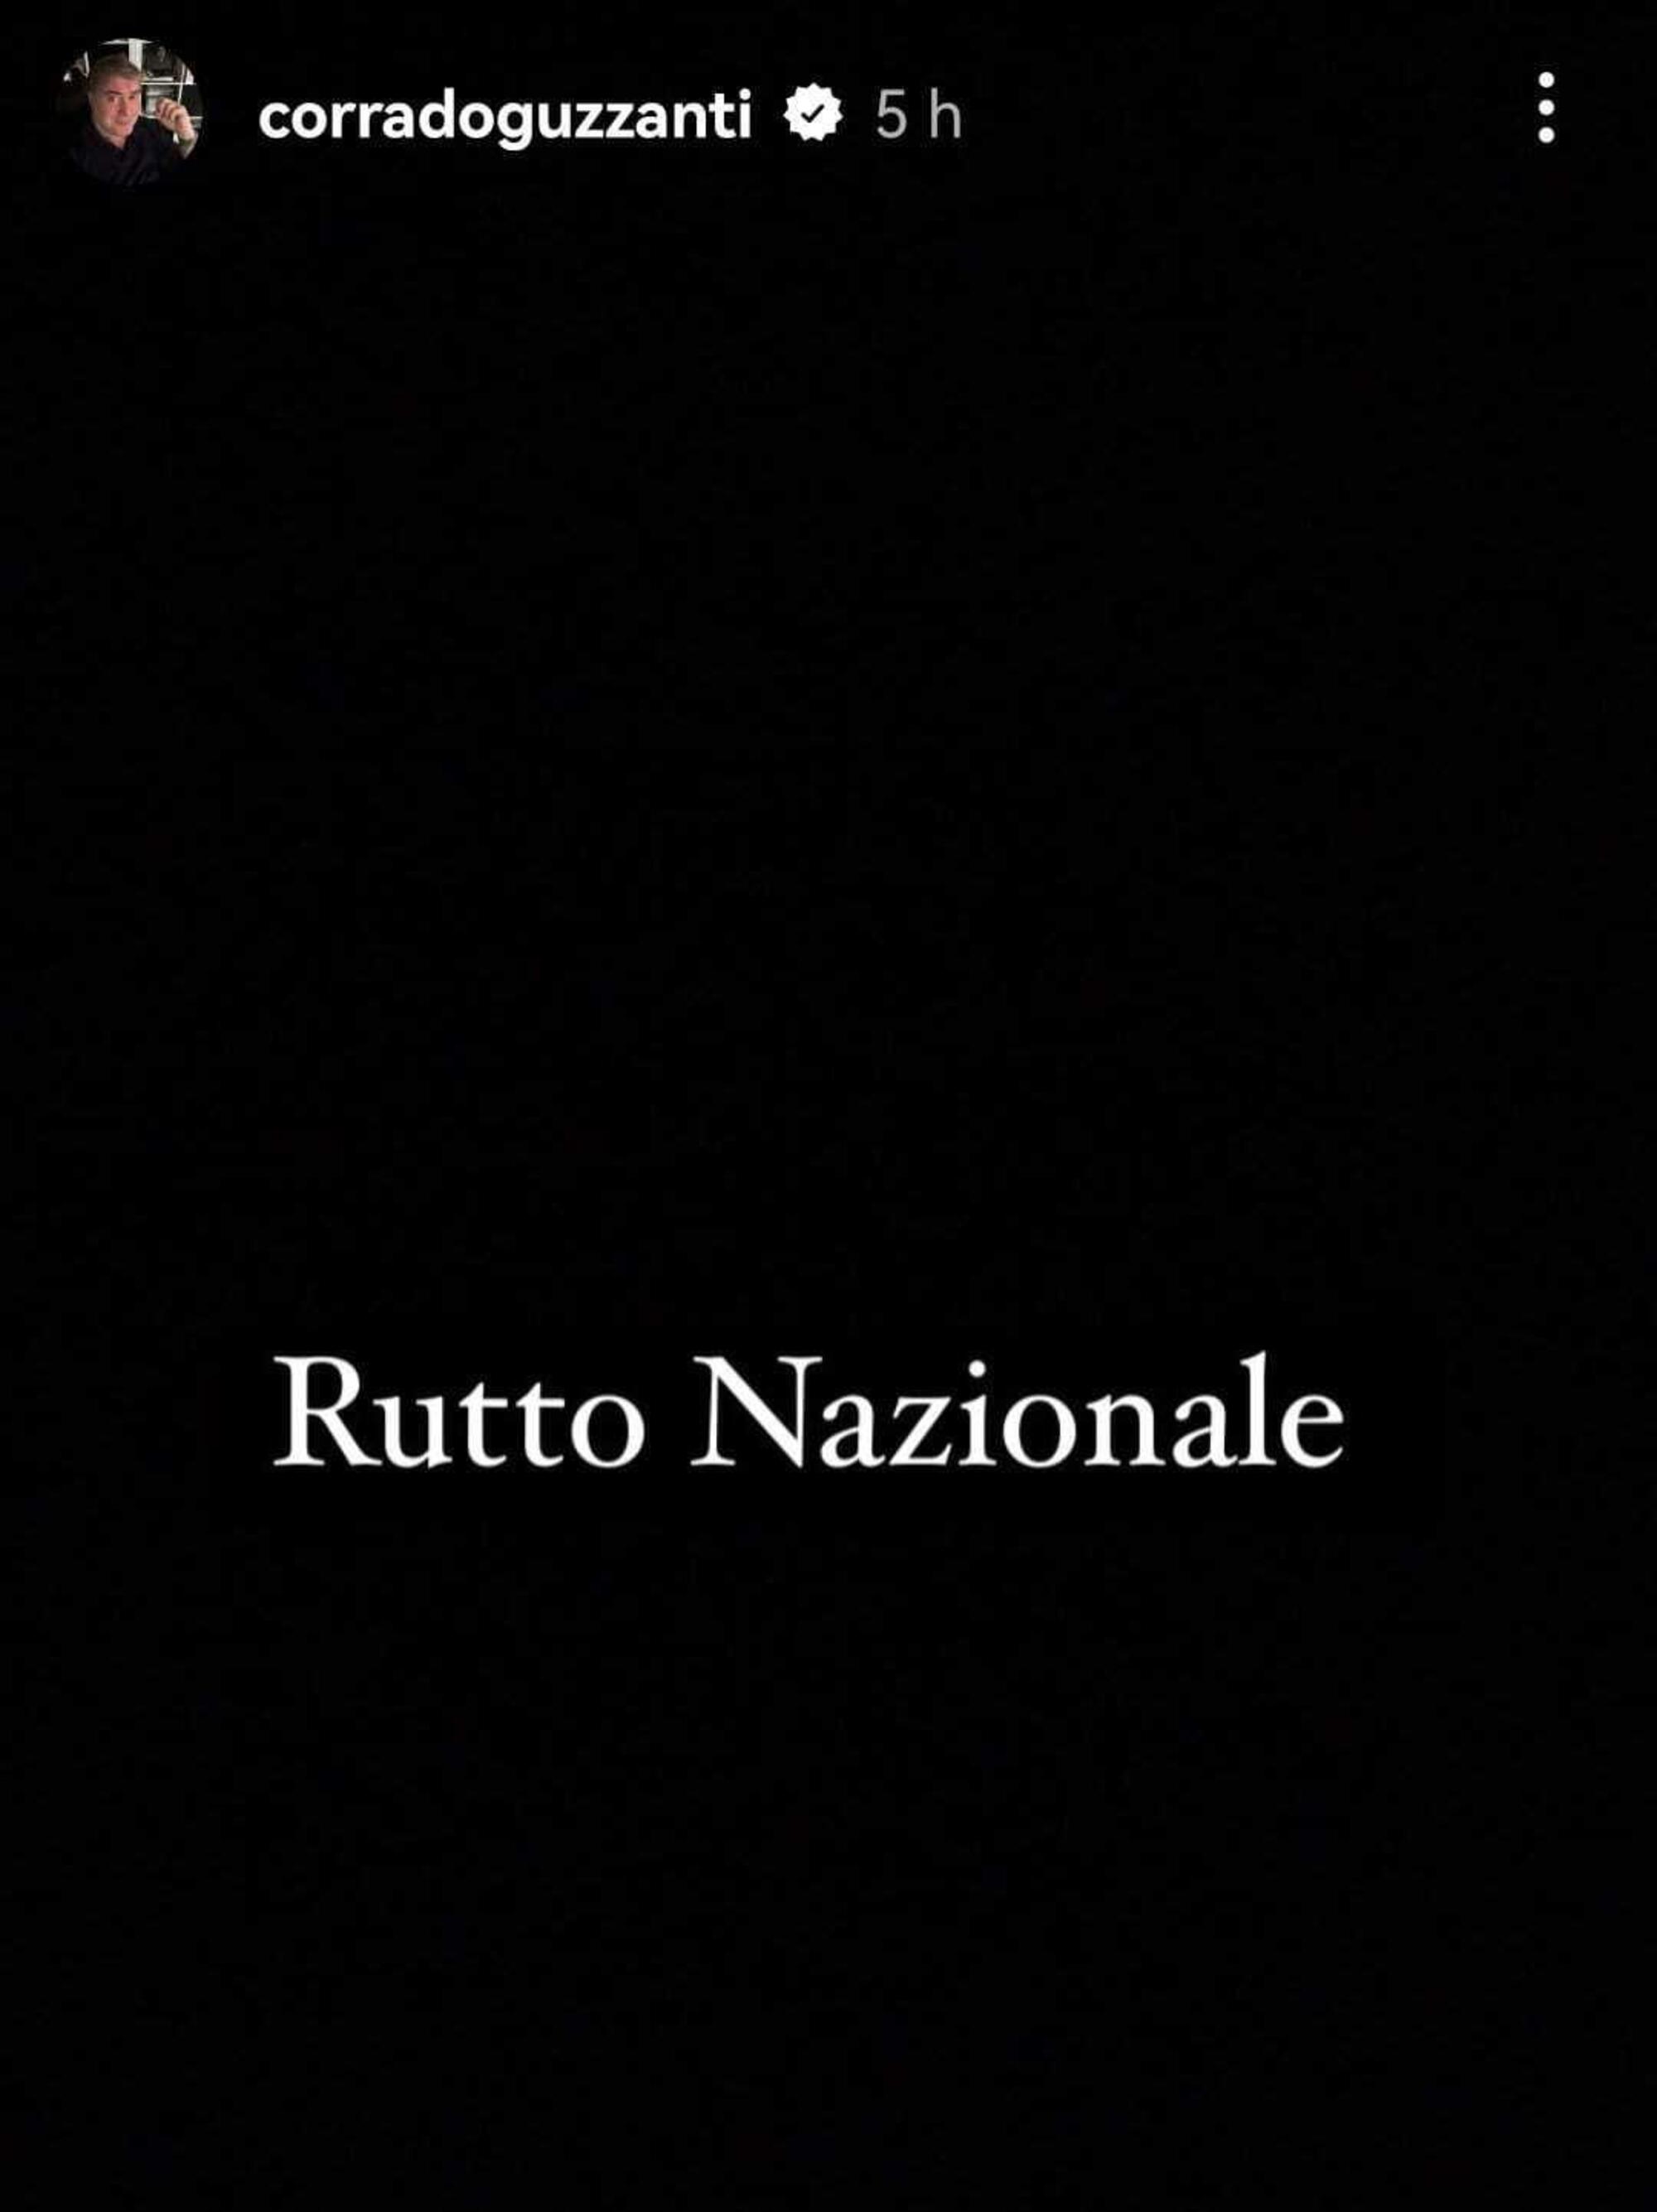 Il &quot;rutto nazionale&quot; lanciato da Corrado Guzzanti in risposta al &quot;lutto nazionale&quot; per Silvio Berlusconi